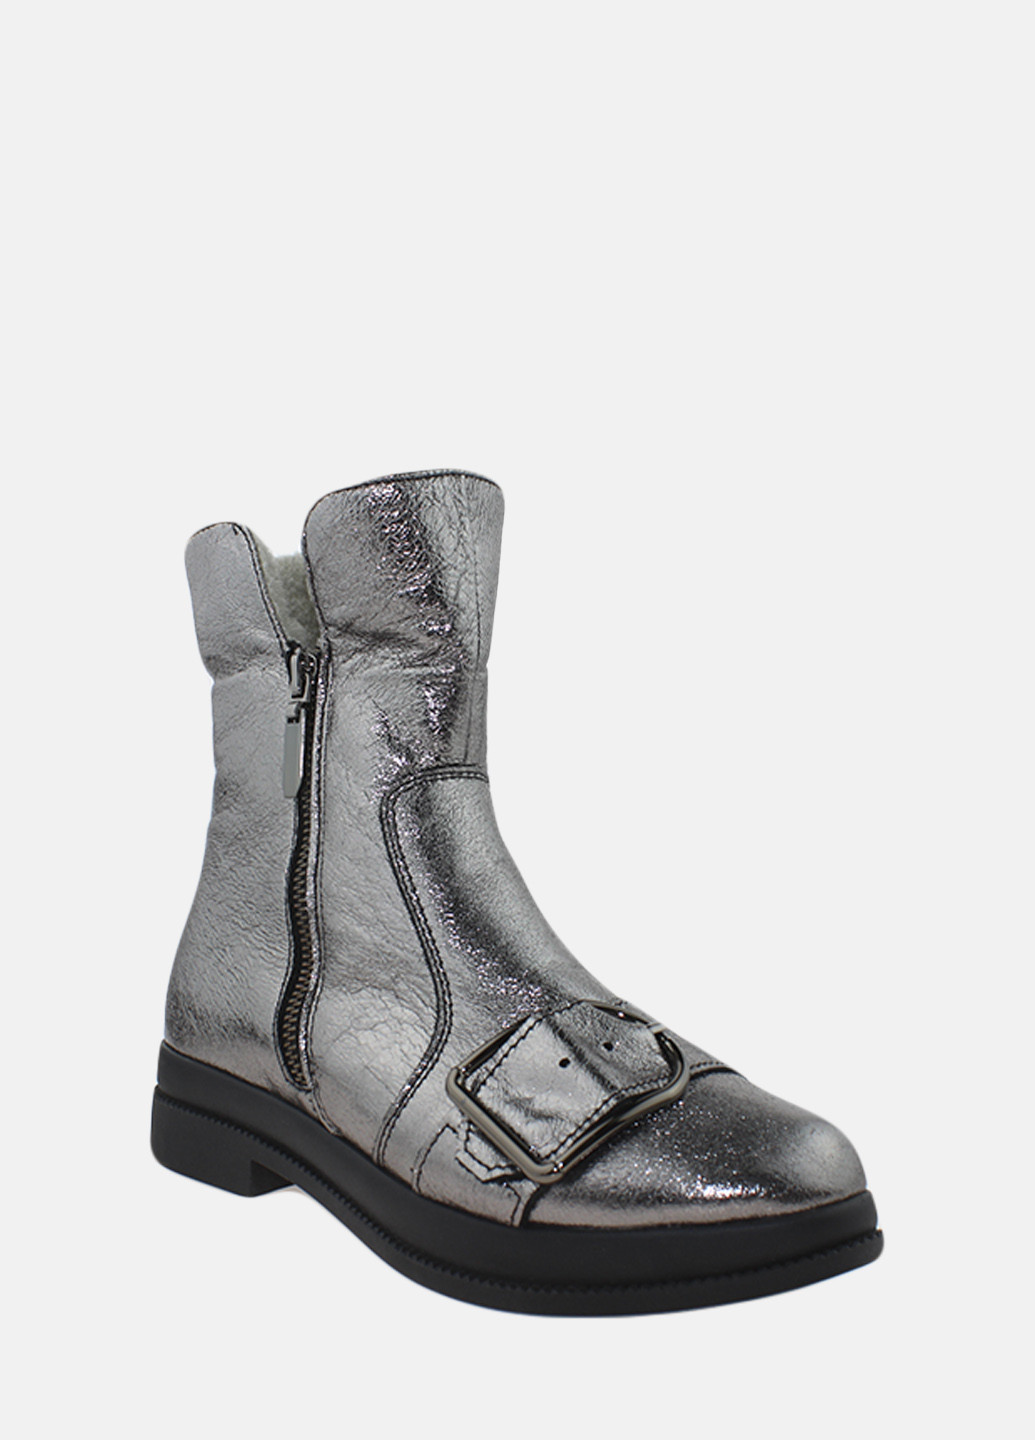 Зимние ботинки rp7725 серебро Passati